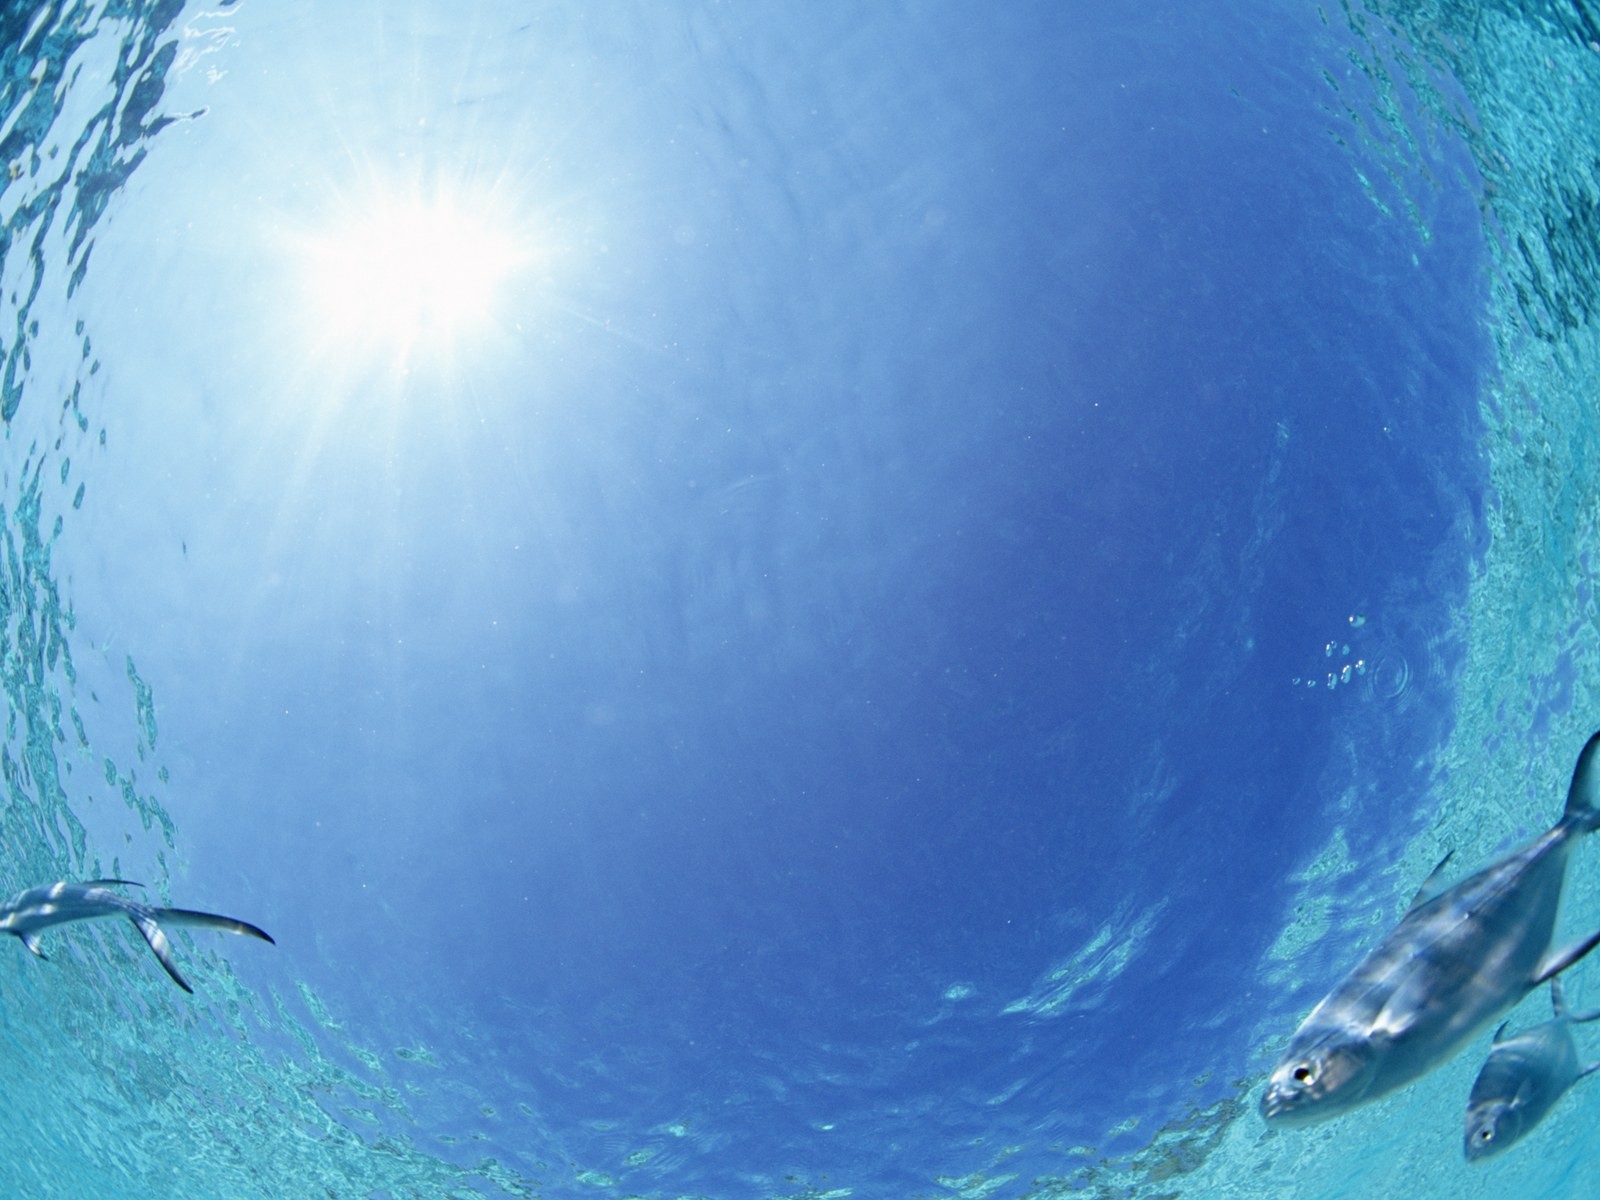 Maledivy vody a modrou oblohu #28 - 1600x1200